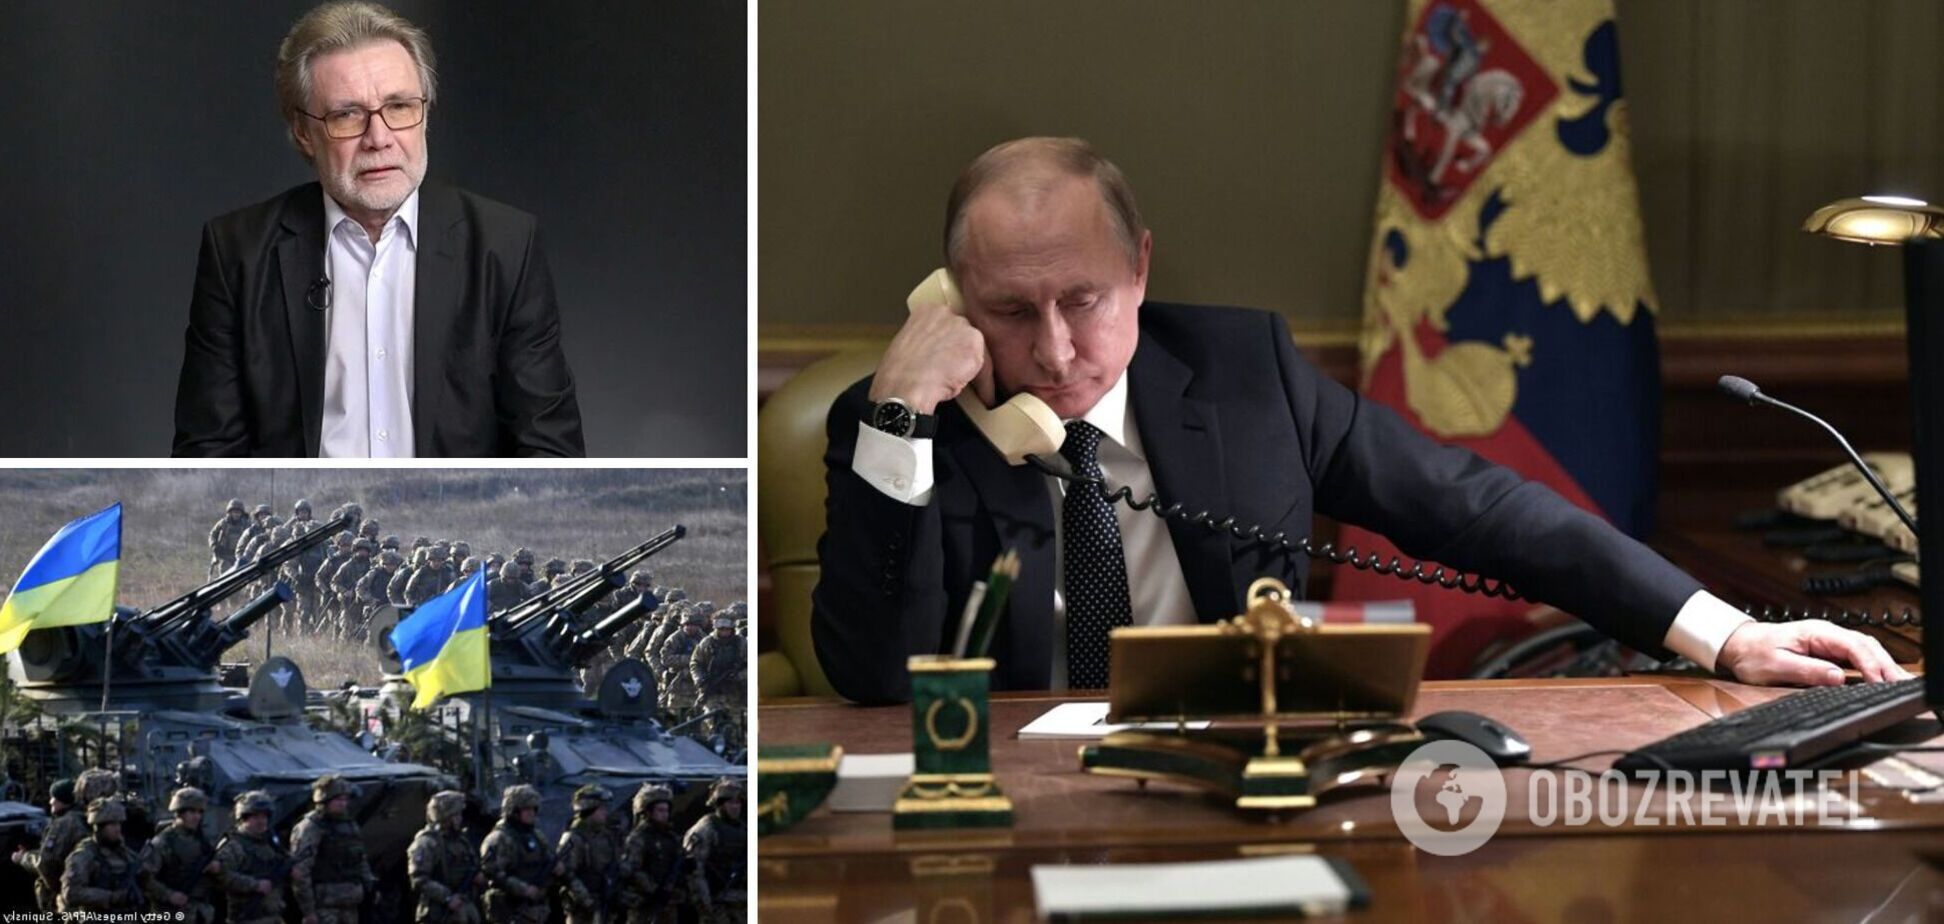 Сунгуровский: Путин сам запросит переговоры, если Украина не даст слабину. Интервью